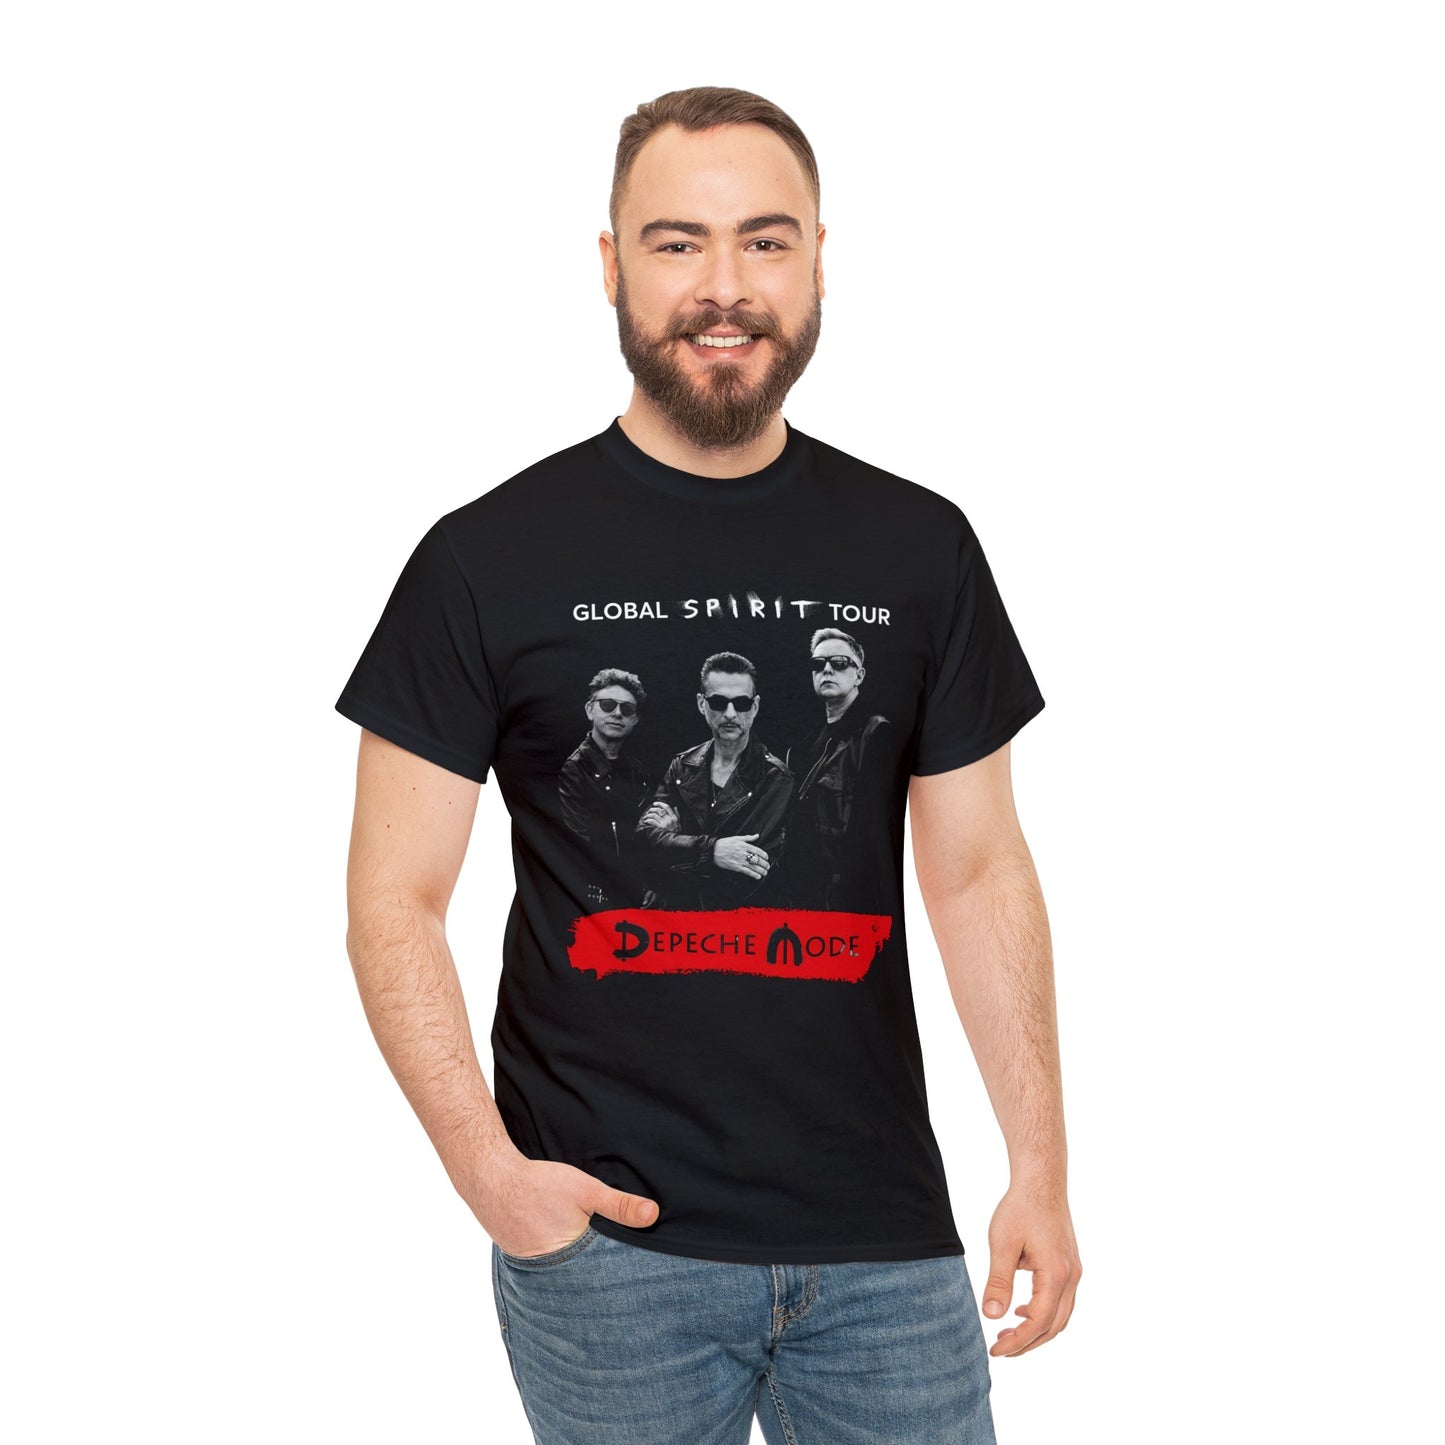 Depeche Mode Global Spirit Tour 2017 T-shirt for Sale